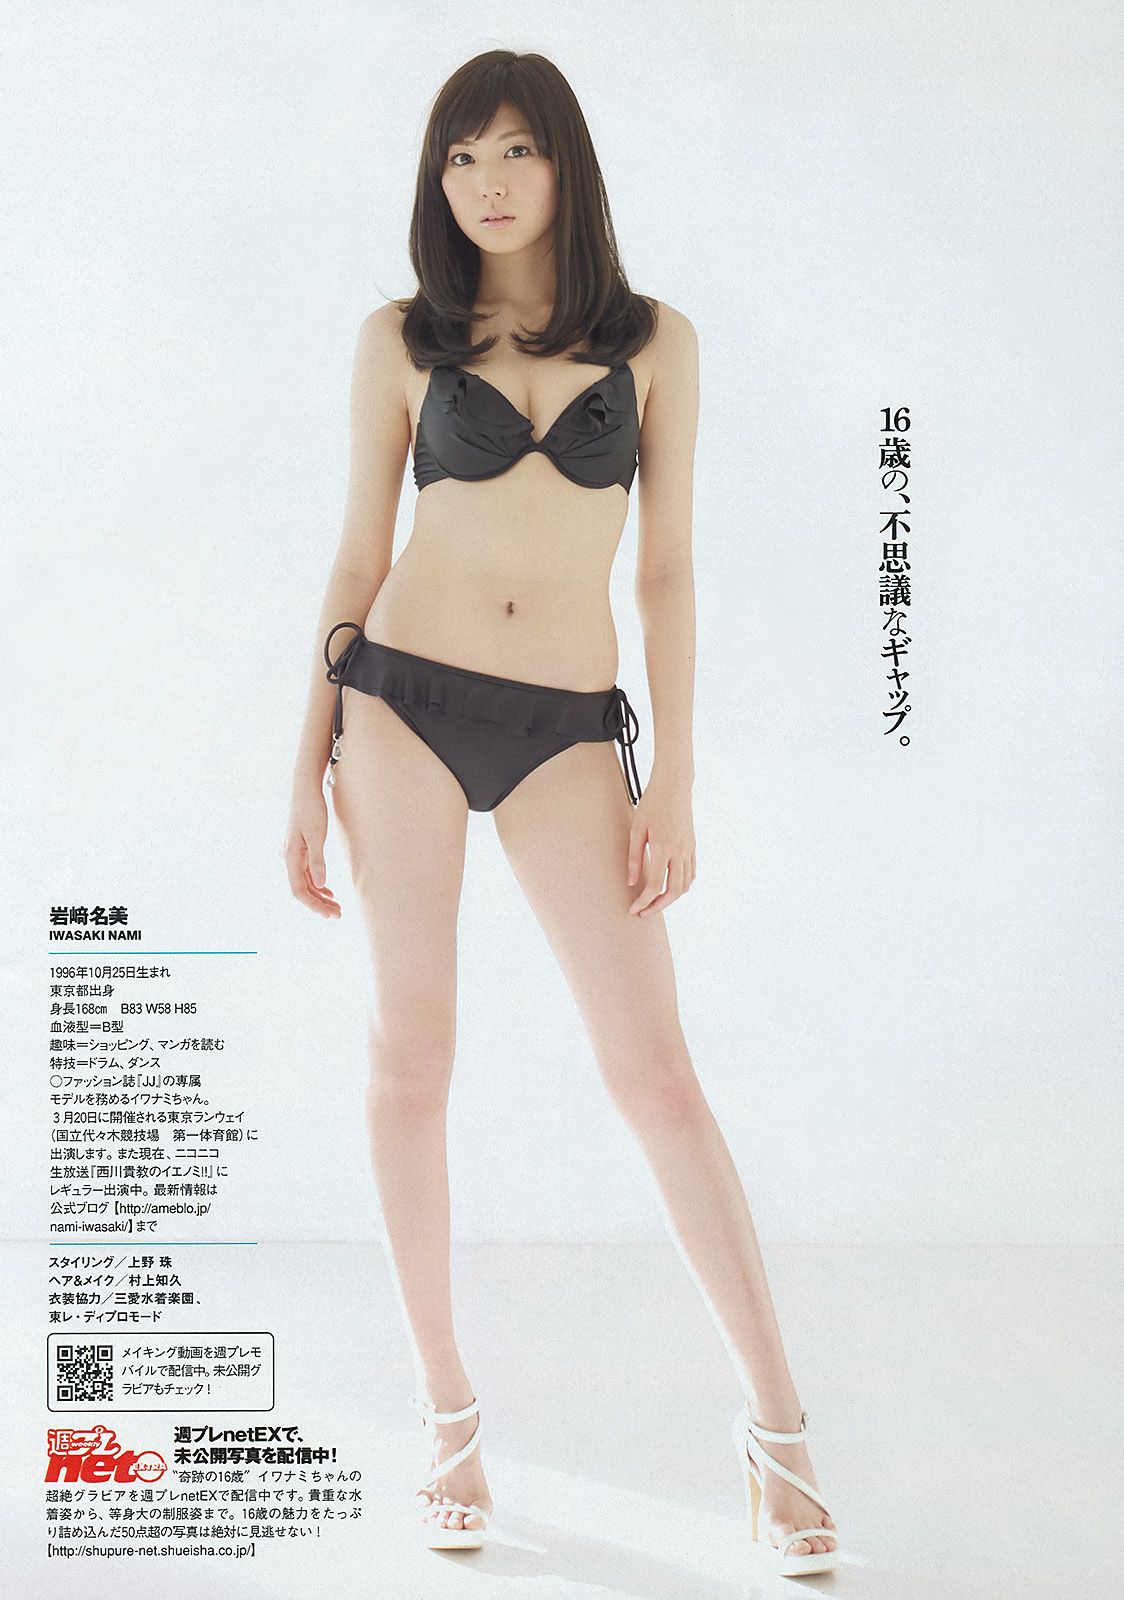 小島瑠璃子 岩﨑名美 壇密 内田理央[Weekly Playboy] 2013 No.133